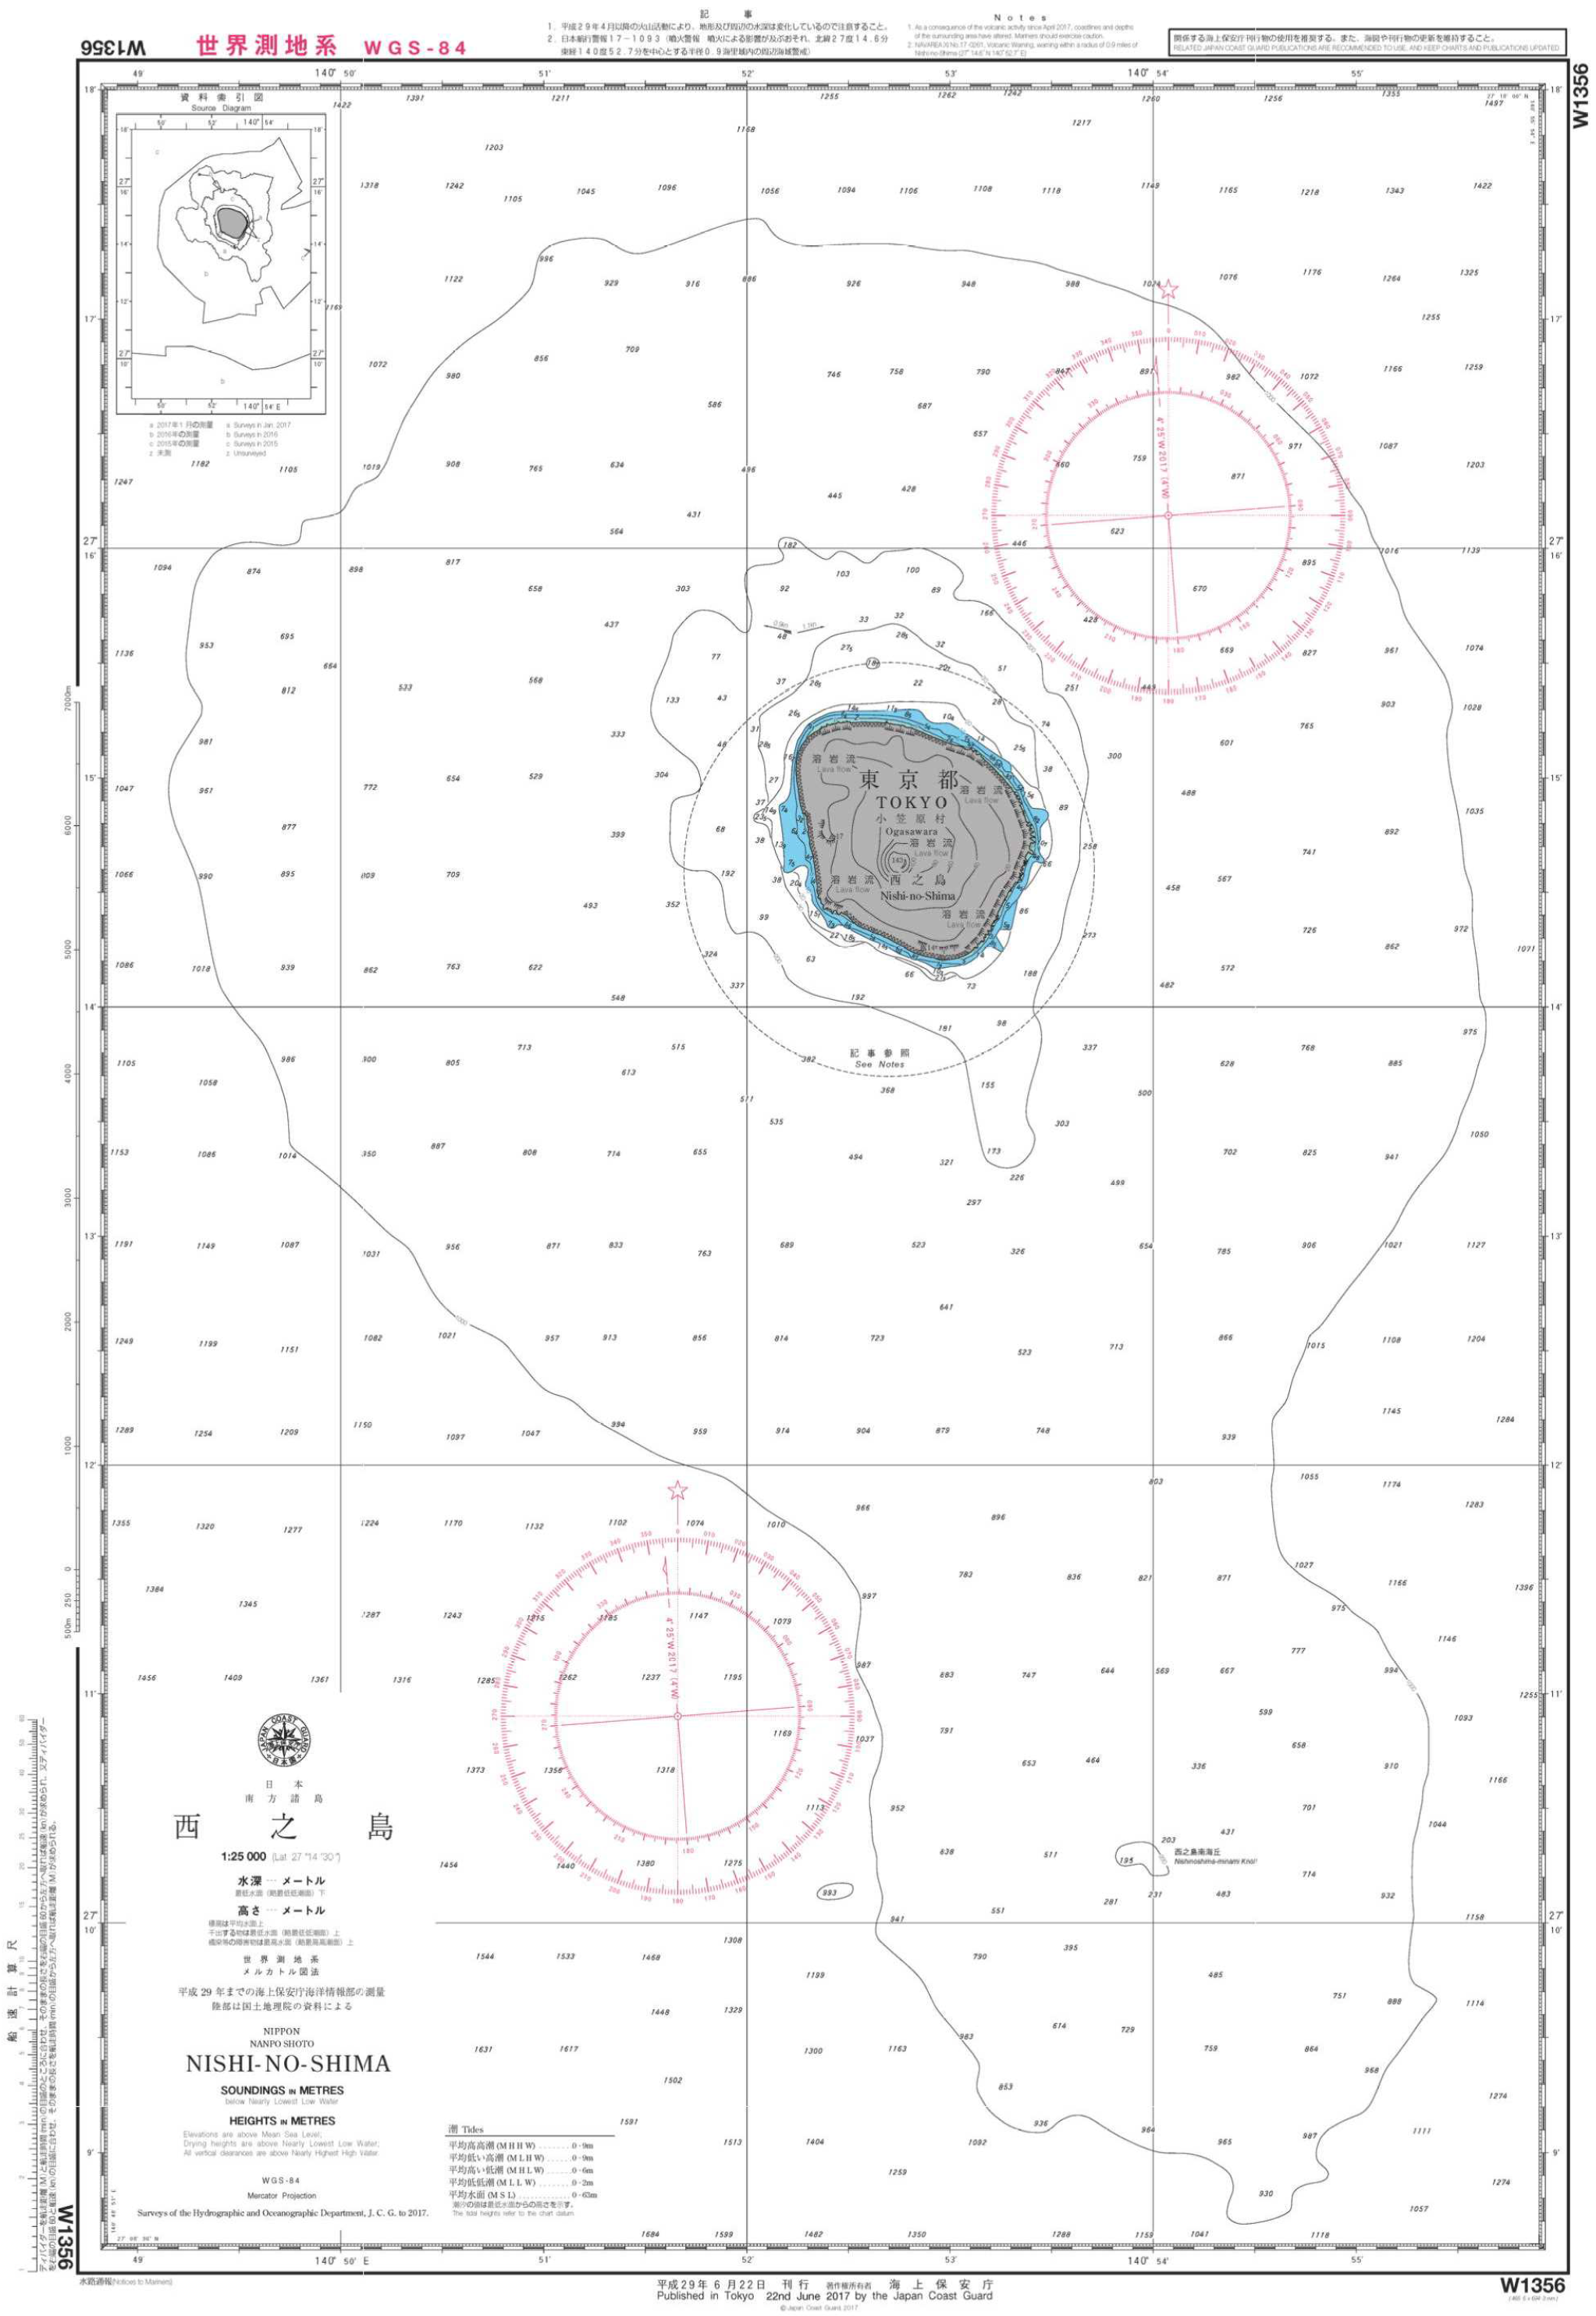 拡大した西之島が記載された海図は、我が国の管轄海域 （領海 と 排他的経済水域 ( EEZ )）の面積が 約 50 km2 拡大したことを示す根拠になります